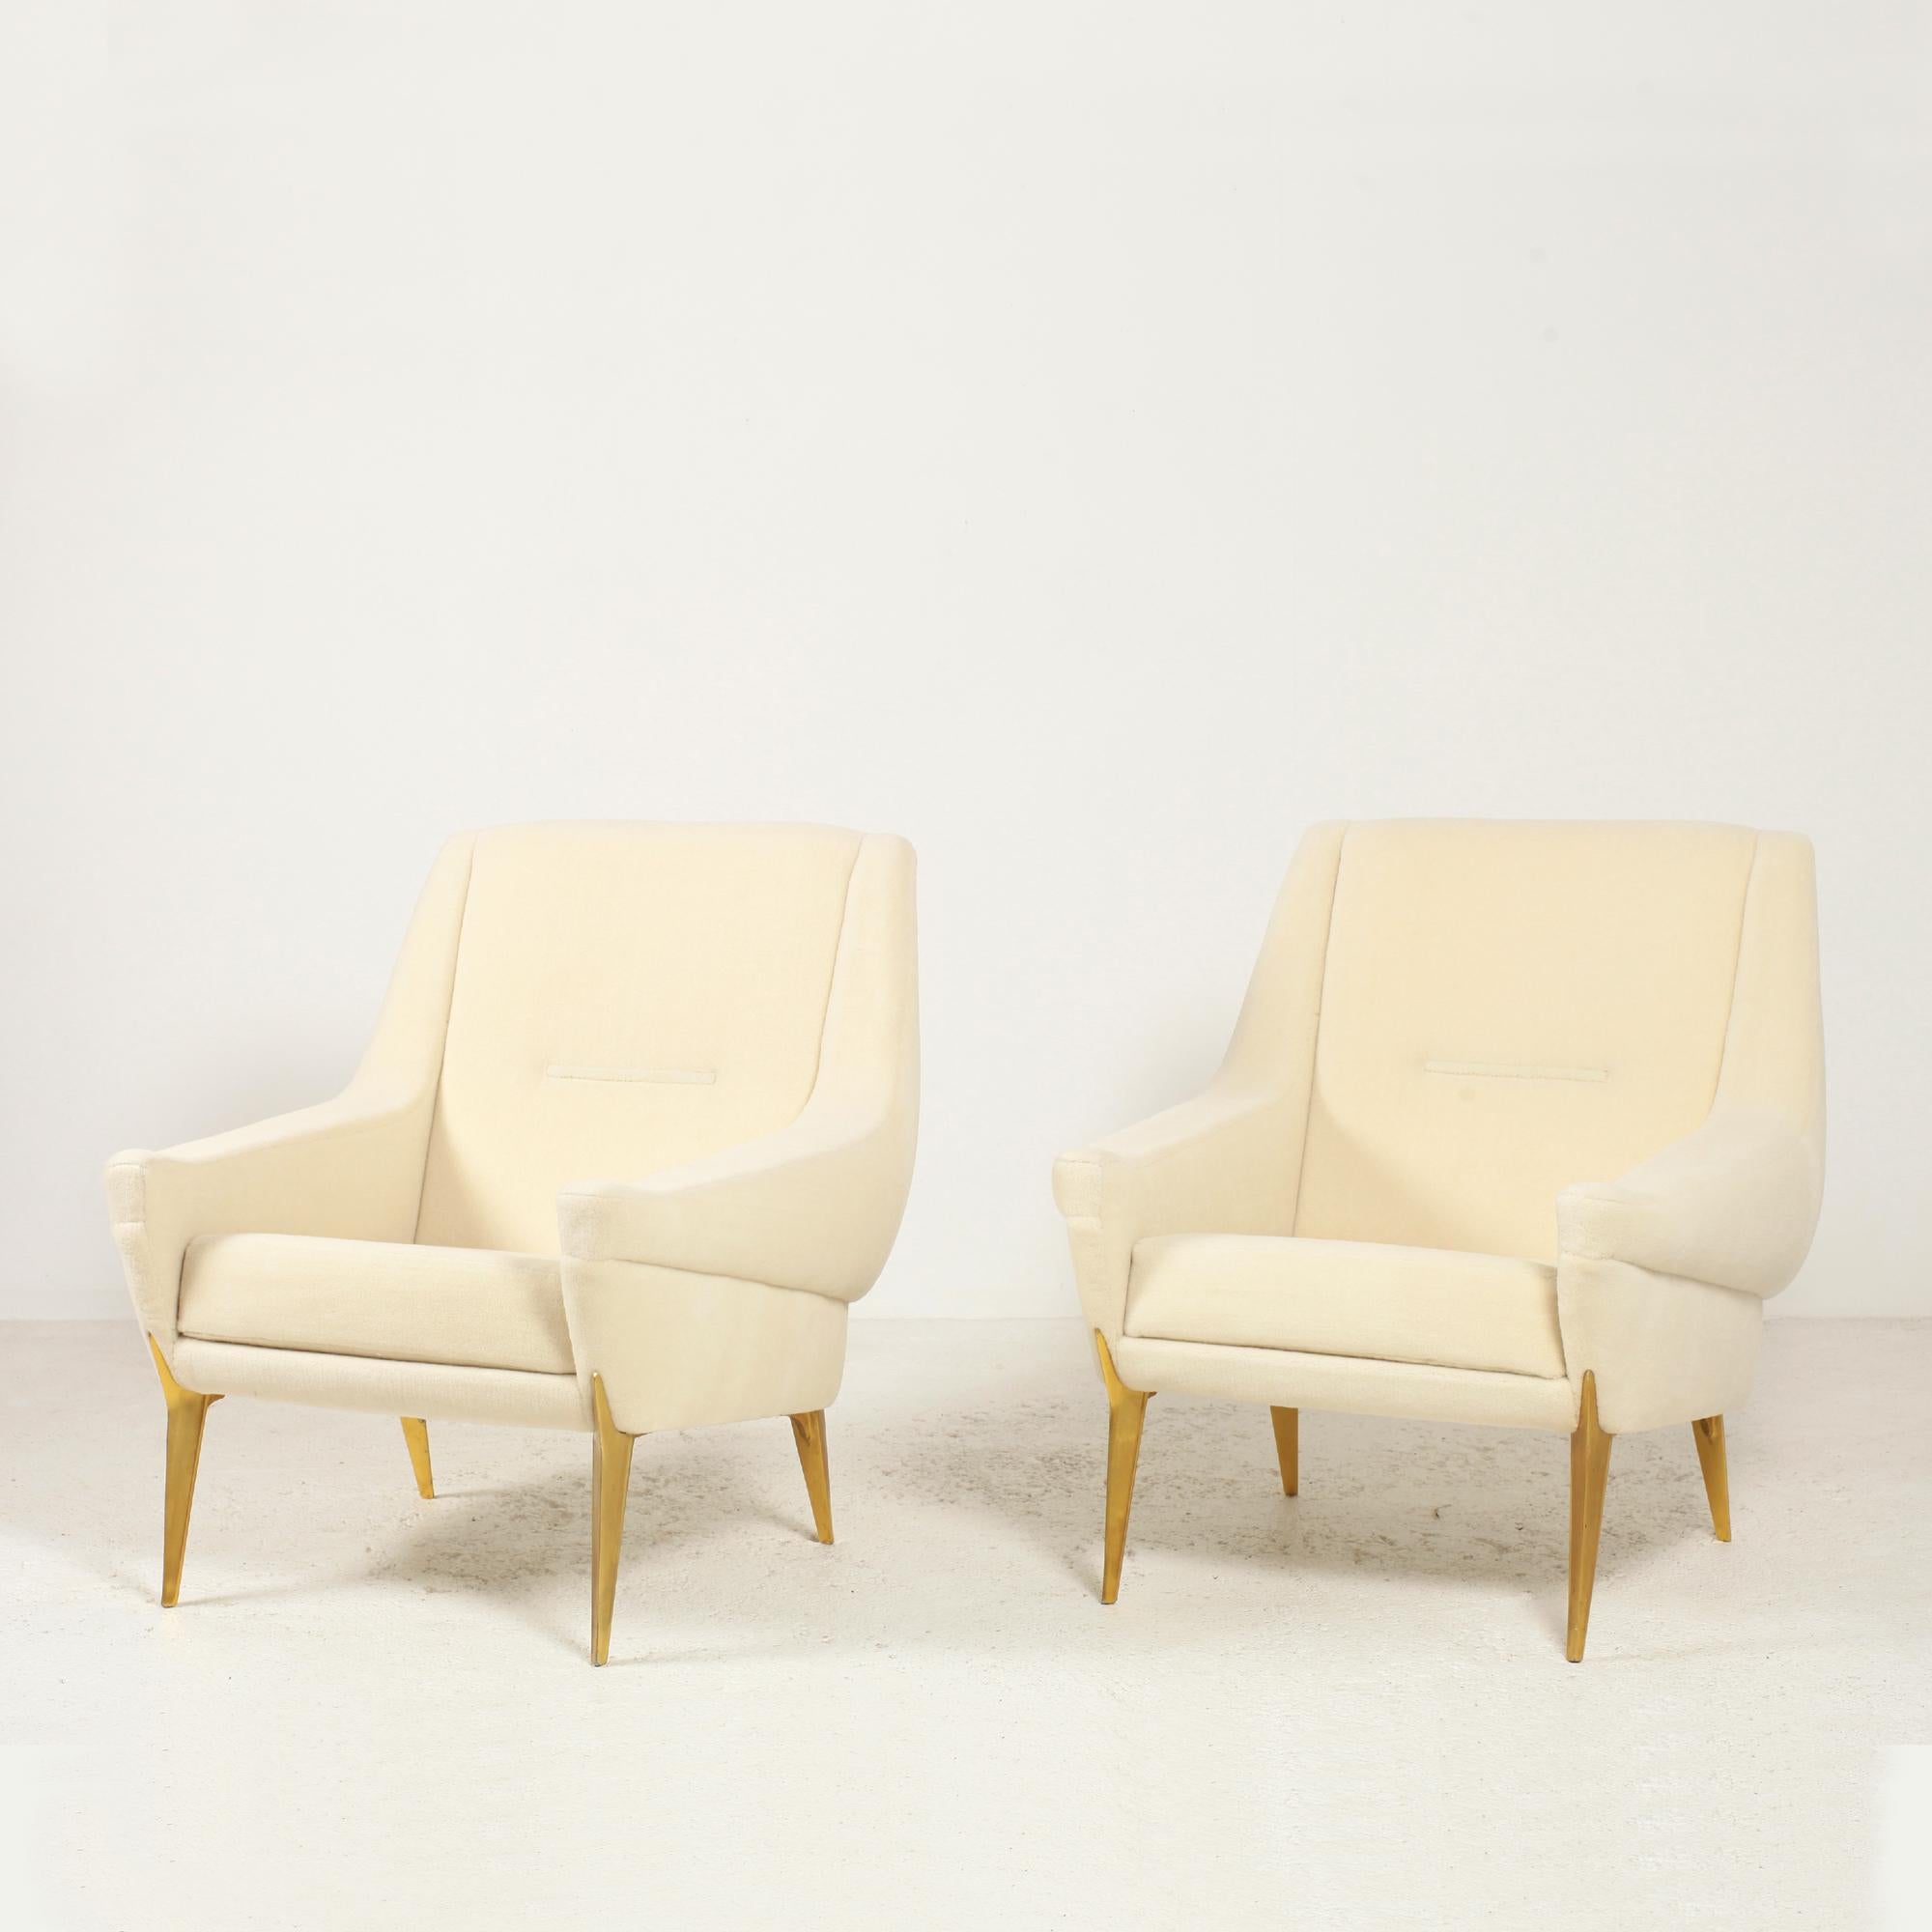 Sehr elegantes und seltenes Paar Lounge-Sessel von Charles Ramos für Castellaneta France um 1950.
Die Füße sind aus originalem, goldfarben eloxiertem Aluminium.
Struktur aus massivem Holz. Völlig neu gestaltet (Schaumstoff und Stoff).
Neu gepolstert